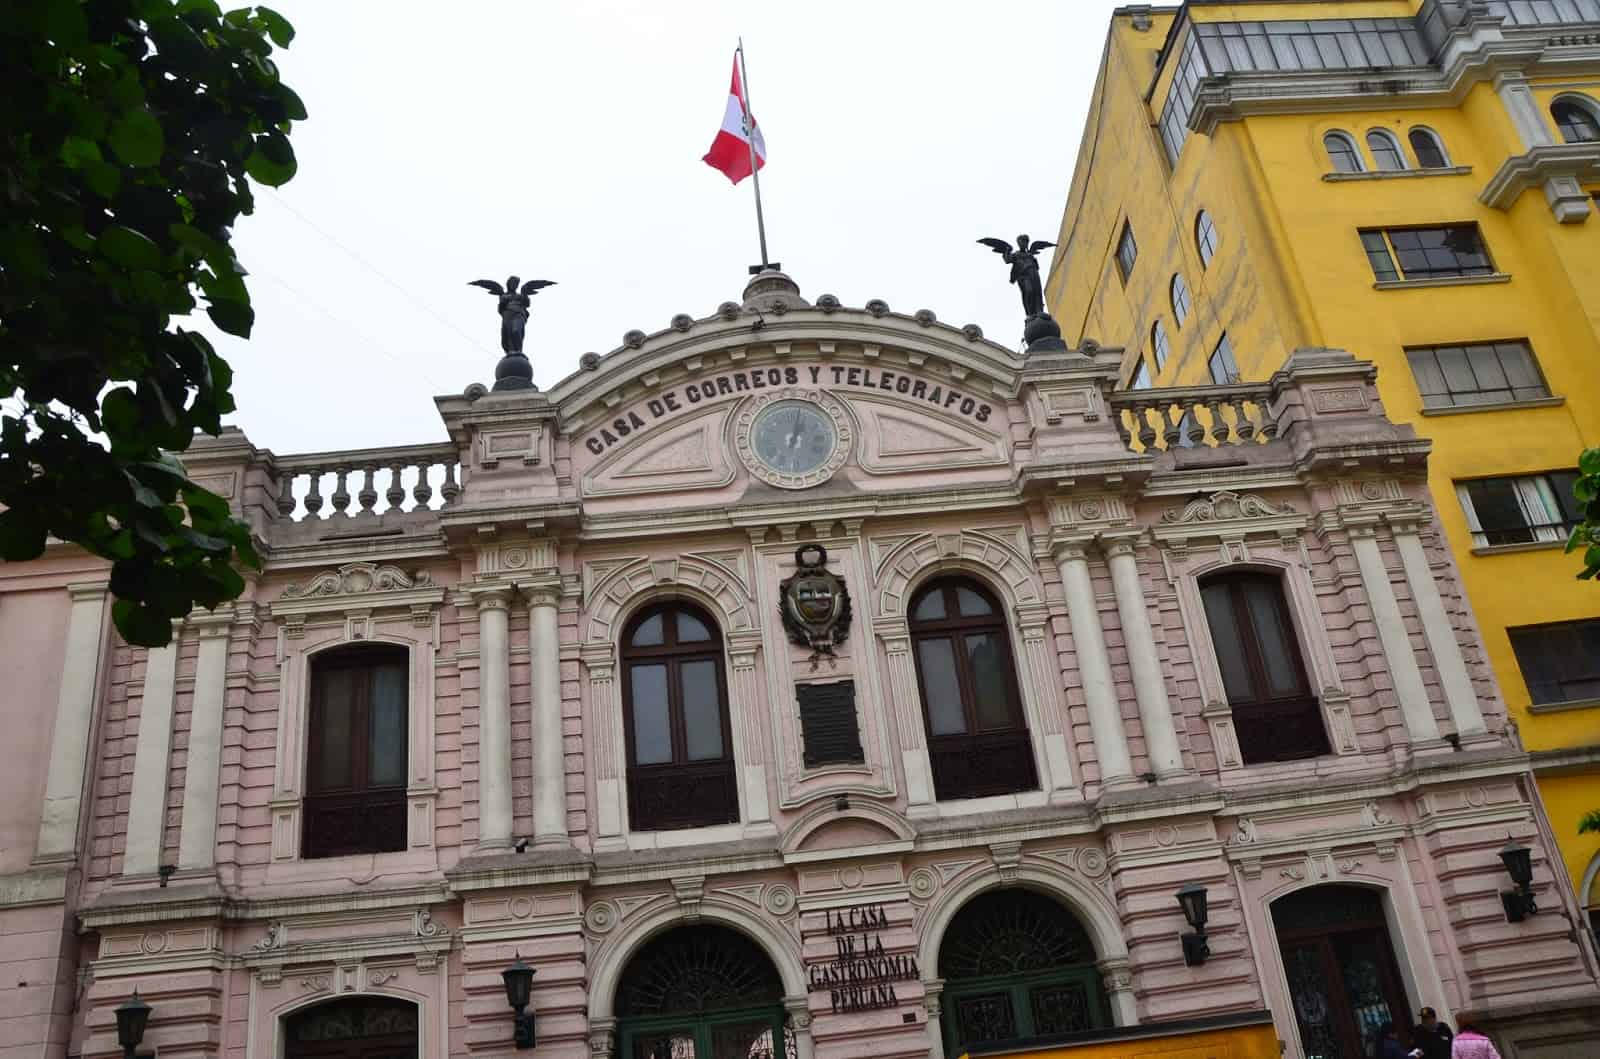 Casa de Correos y Telegrafos at Plaza Mayor in Lima, Peru